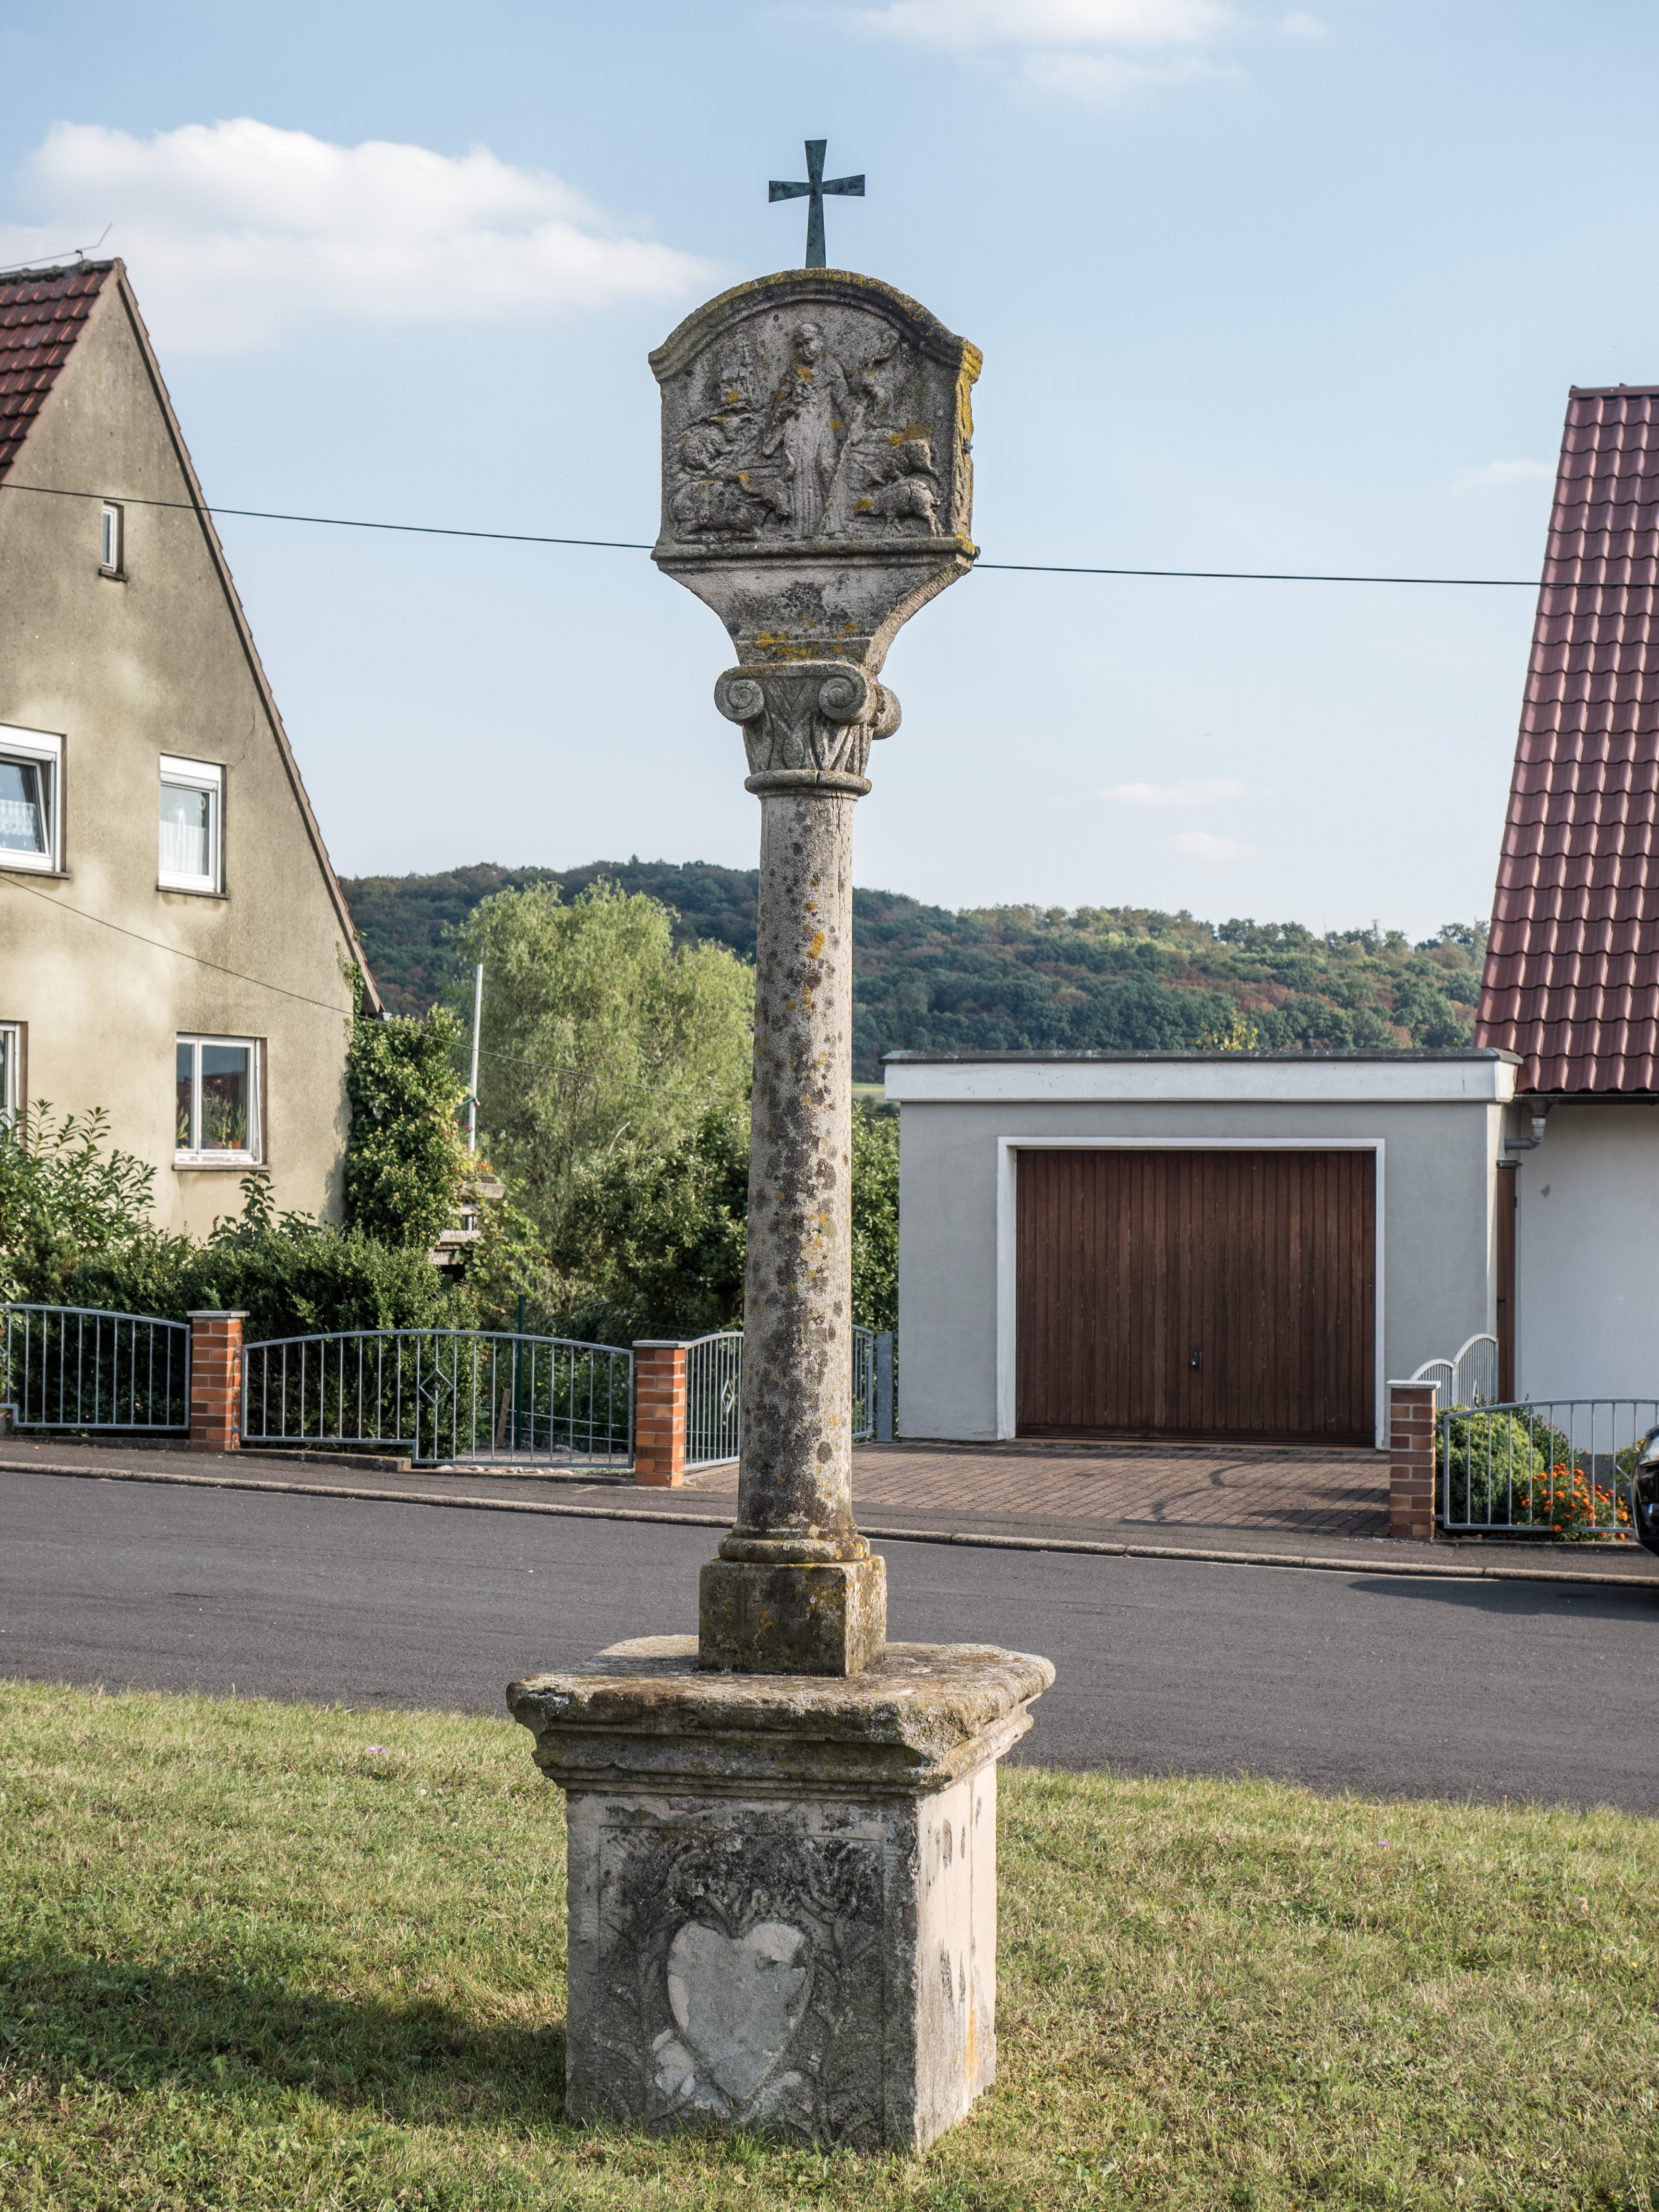 Hundelshausen-Sanstone-column-9240045